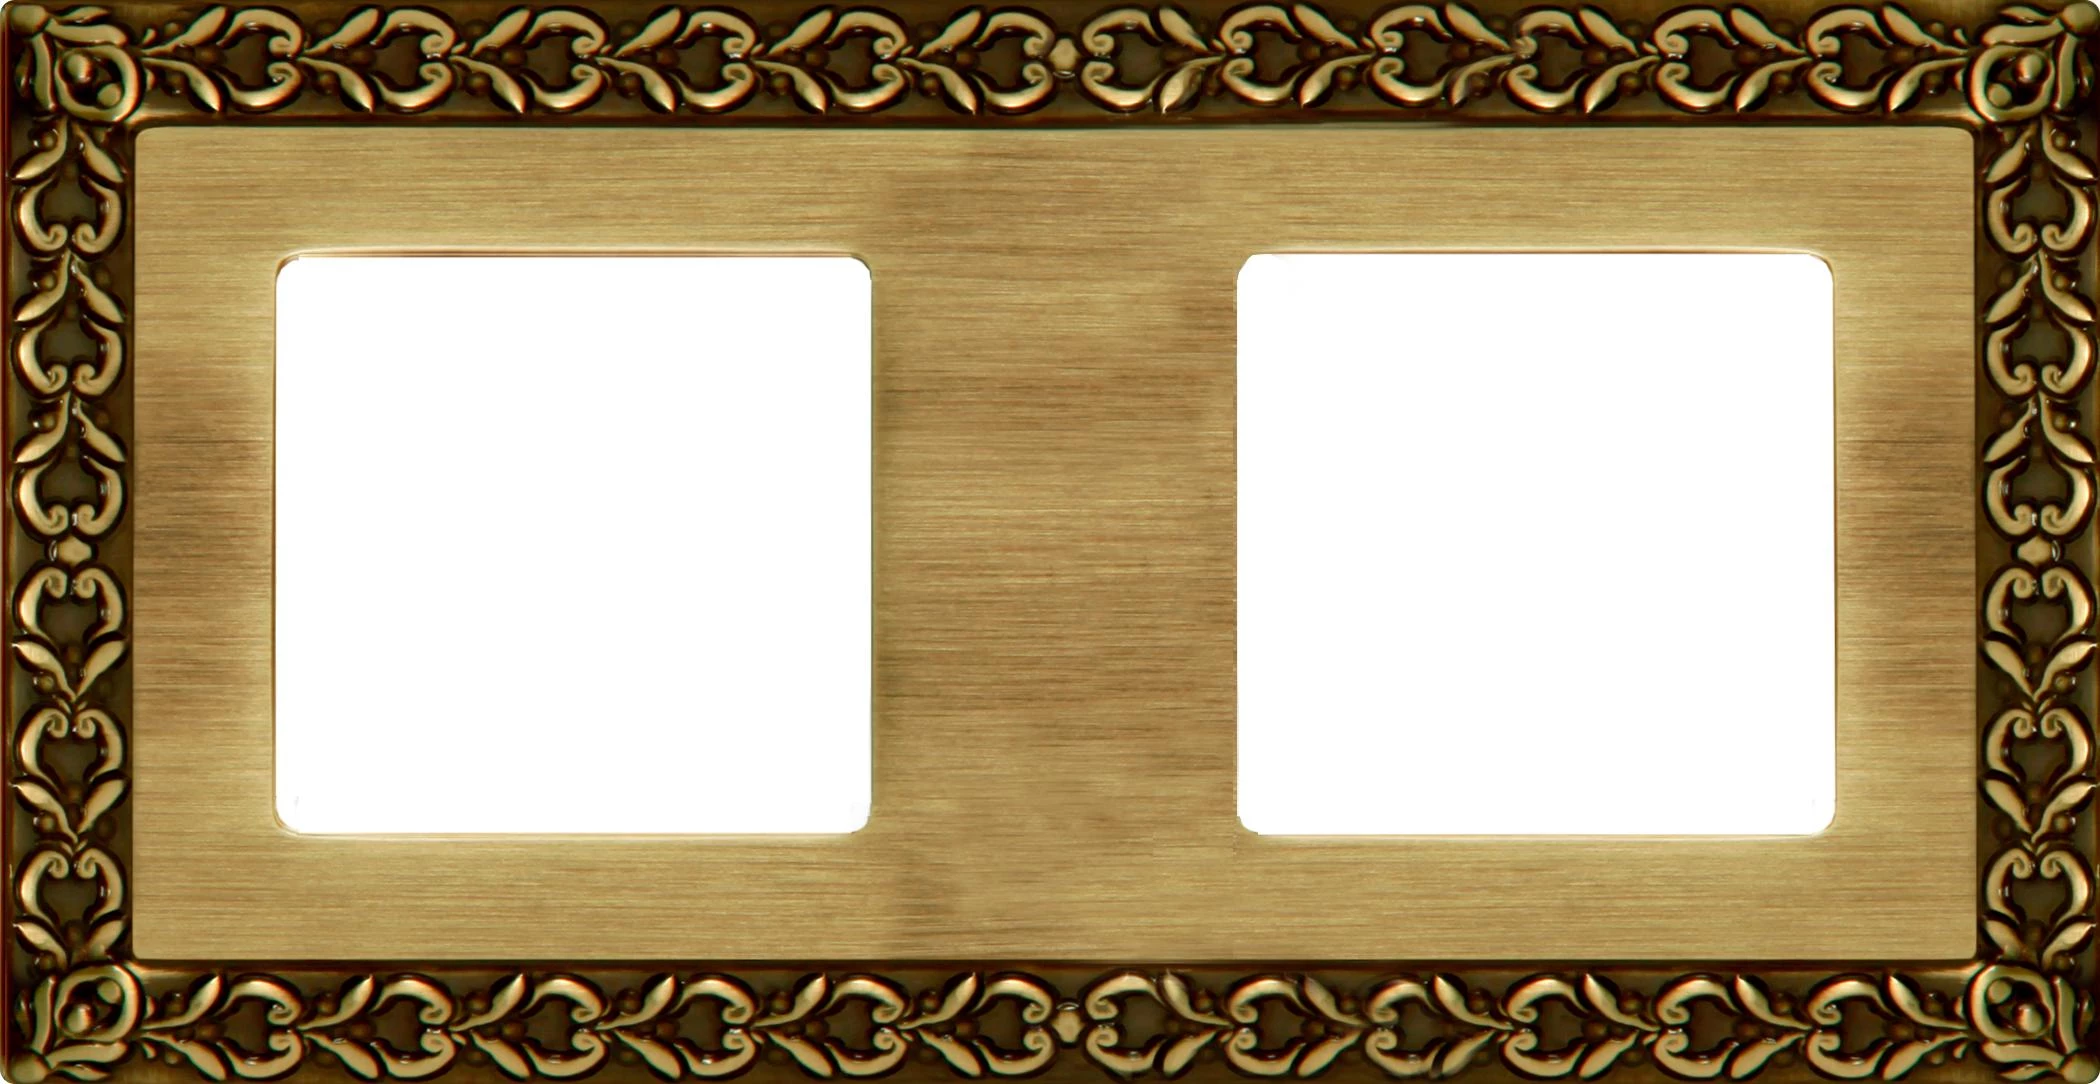  артикул FD01222PB название Рамка 2-ая (двойная), цвет Светлая бронза, San Sebastian, Fede